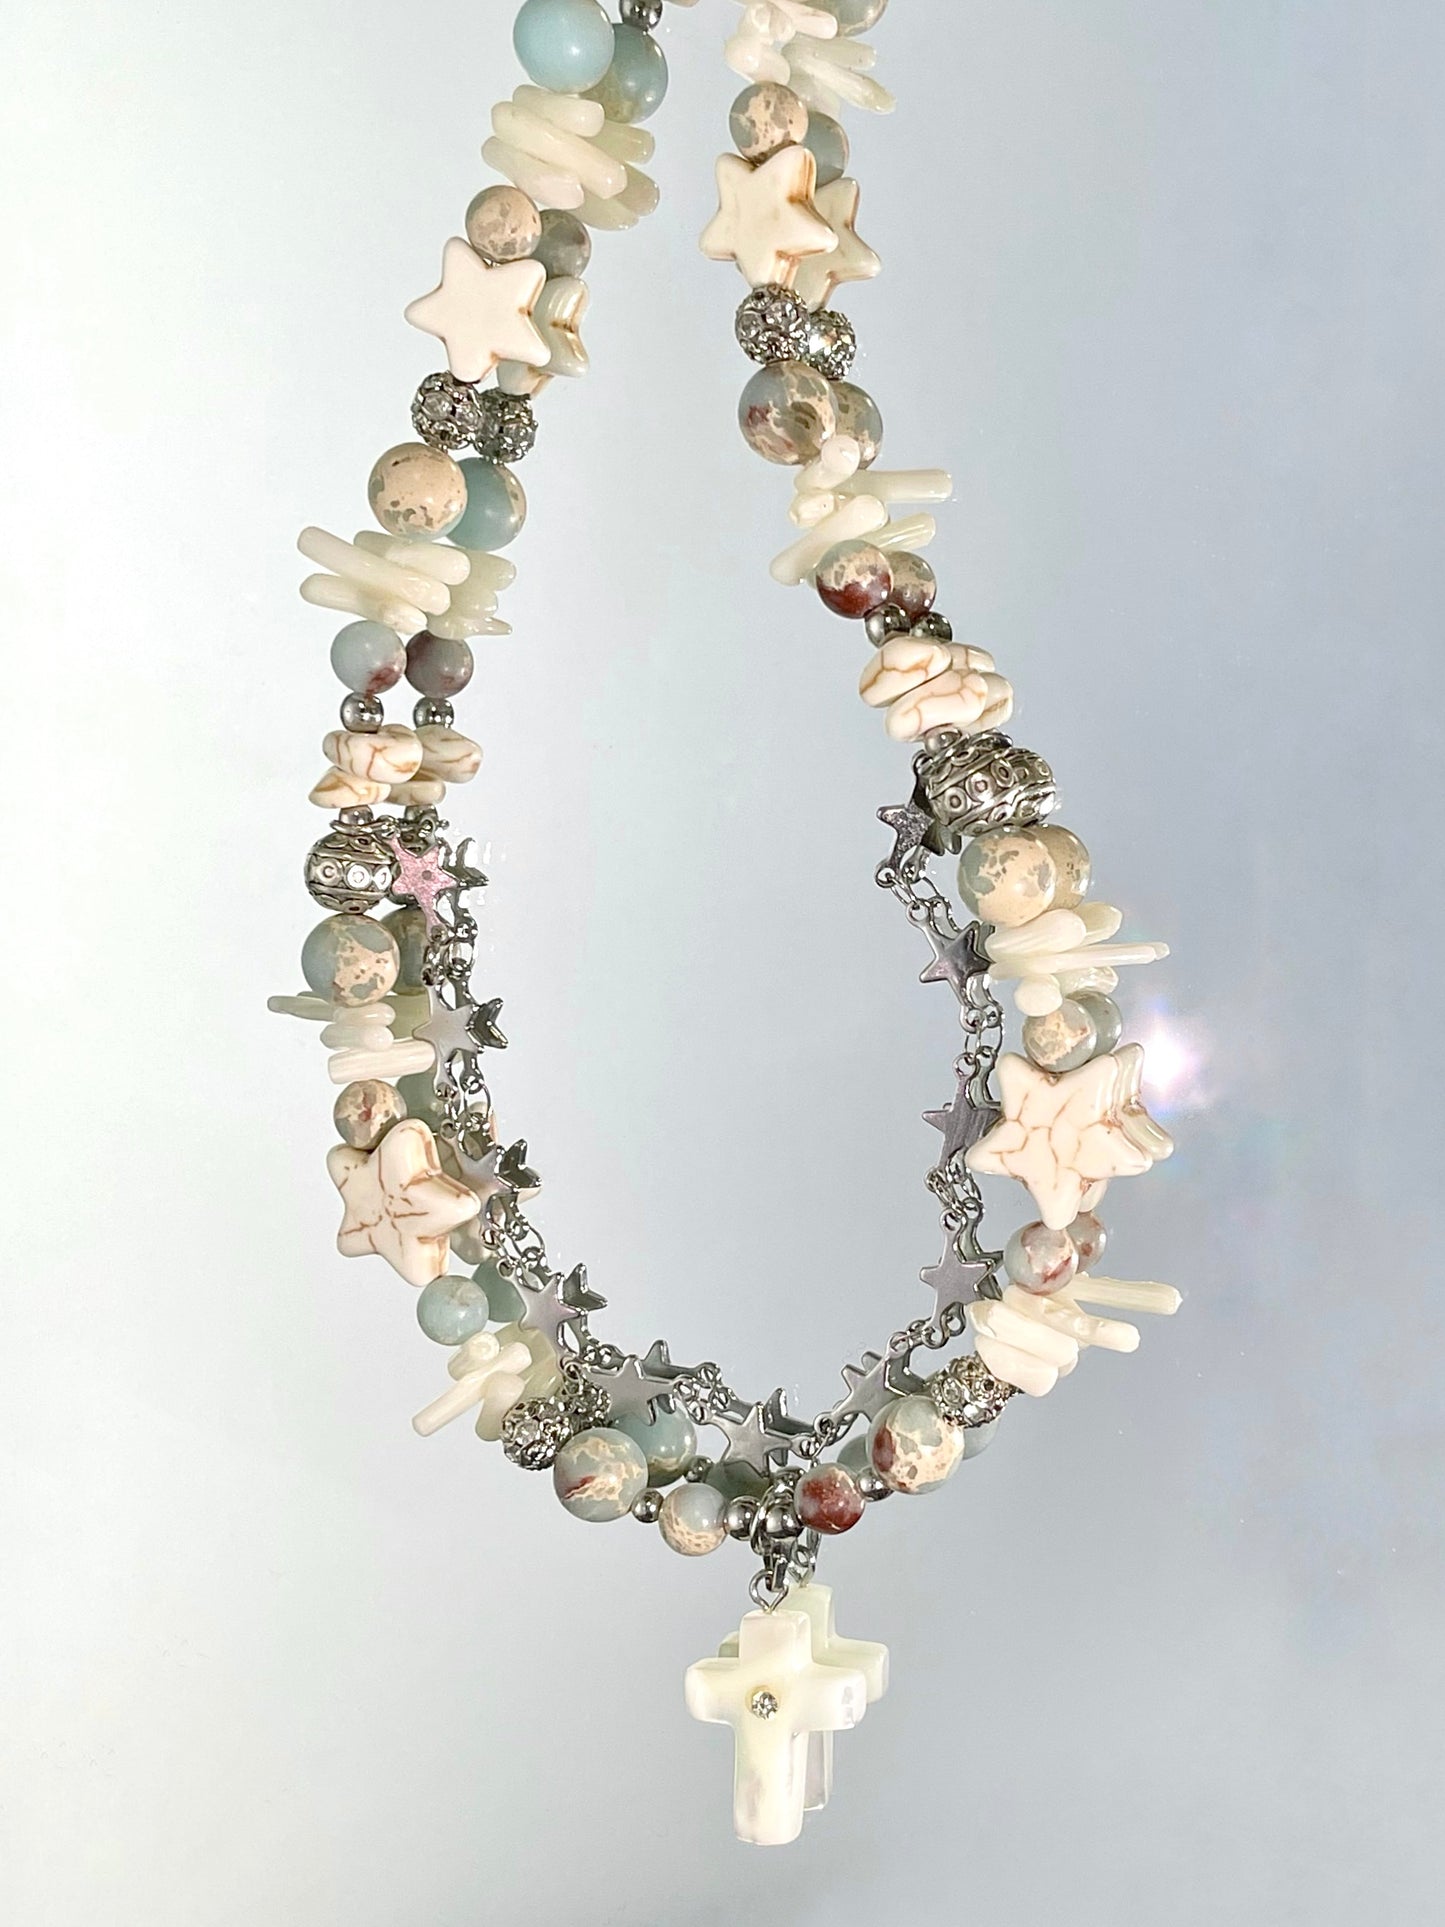 handmade blue white star bracelet necklace